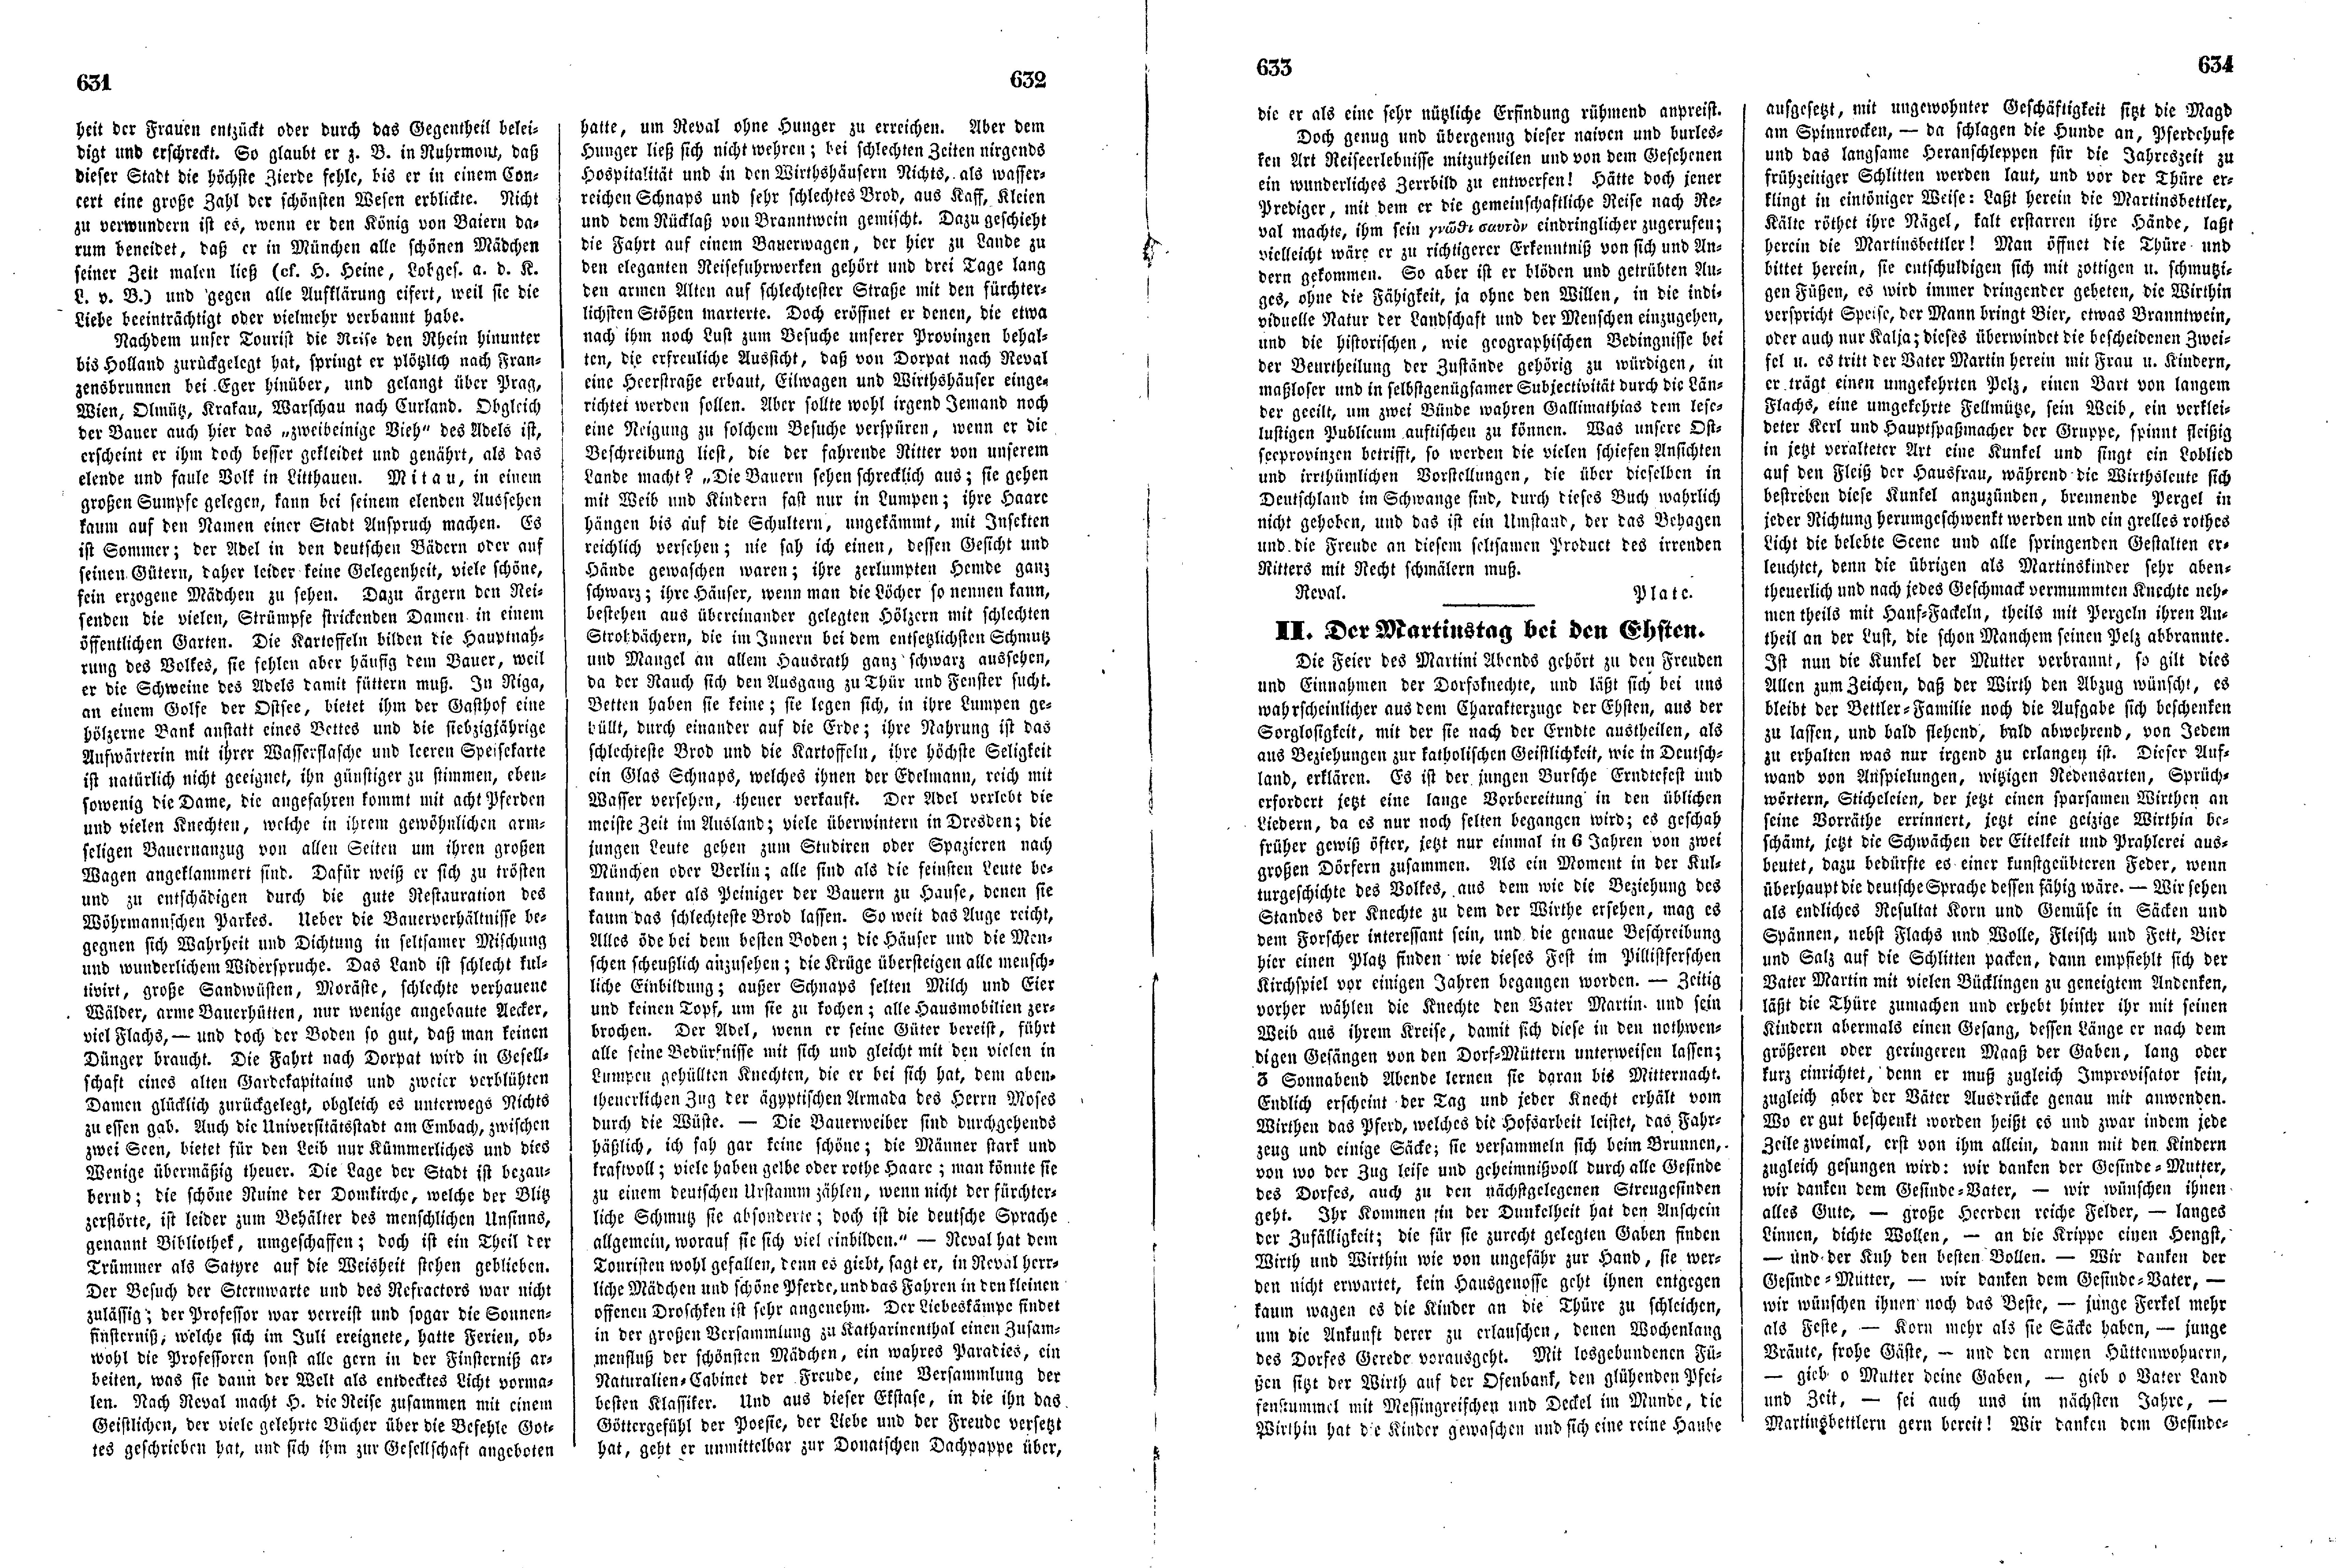 Das Inland [11] (1846) | 163. (631-634) Põhitekst